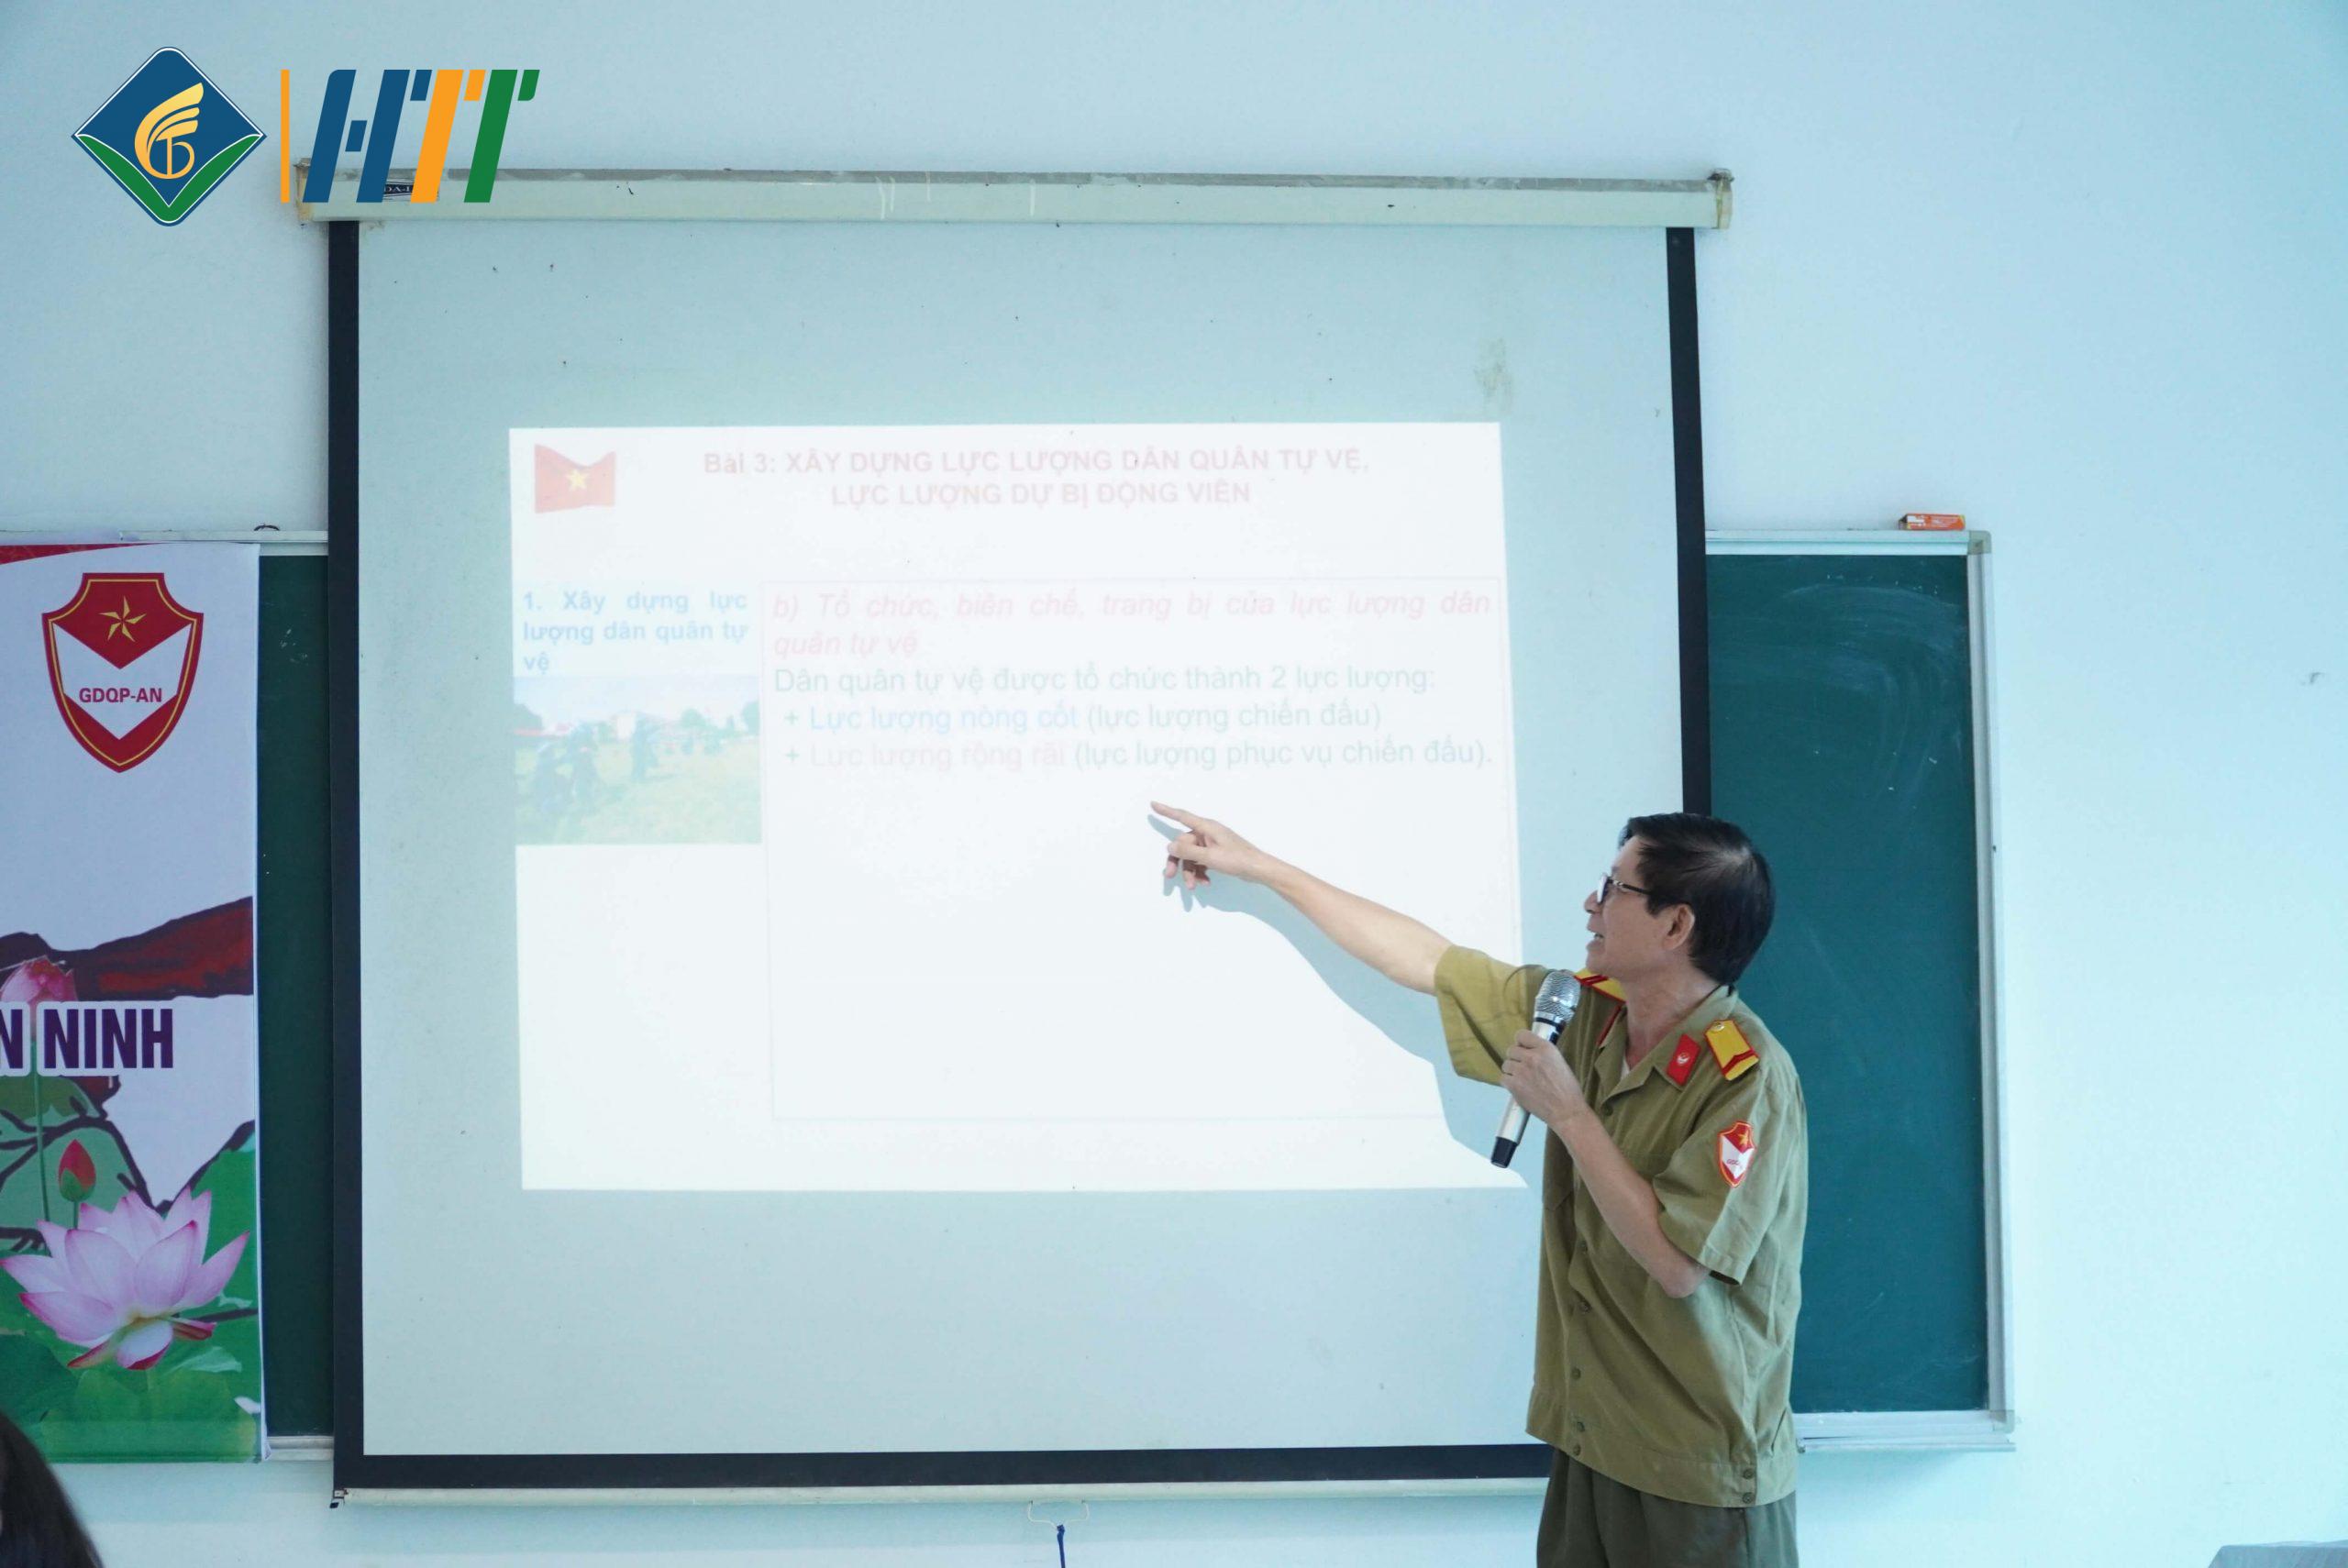 Đại tá Nguyễn Cao Thăng - Giáo viên bộ môn Giáo dục Quốc phòng an ninh với bài giảng "Xây dựng lực lượng dân quân tự vệ, lực lượng dự bị động viên